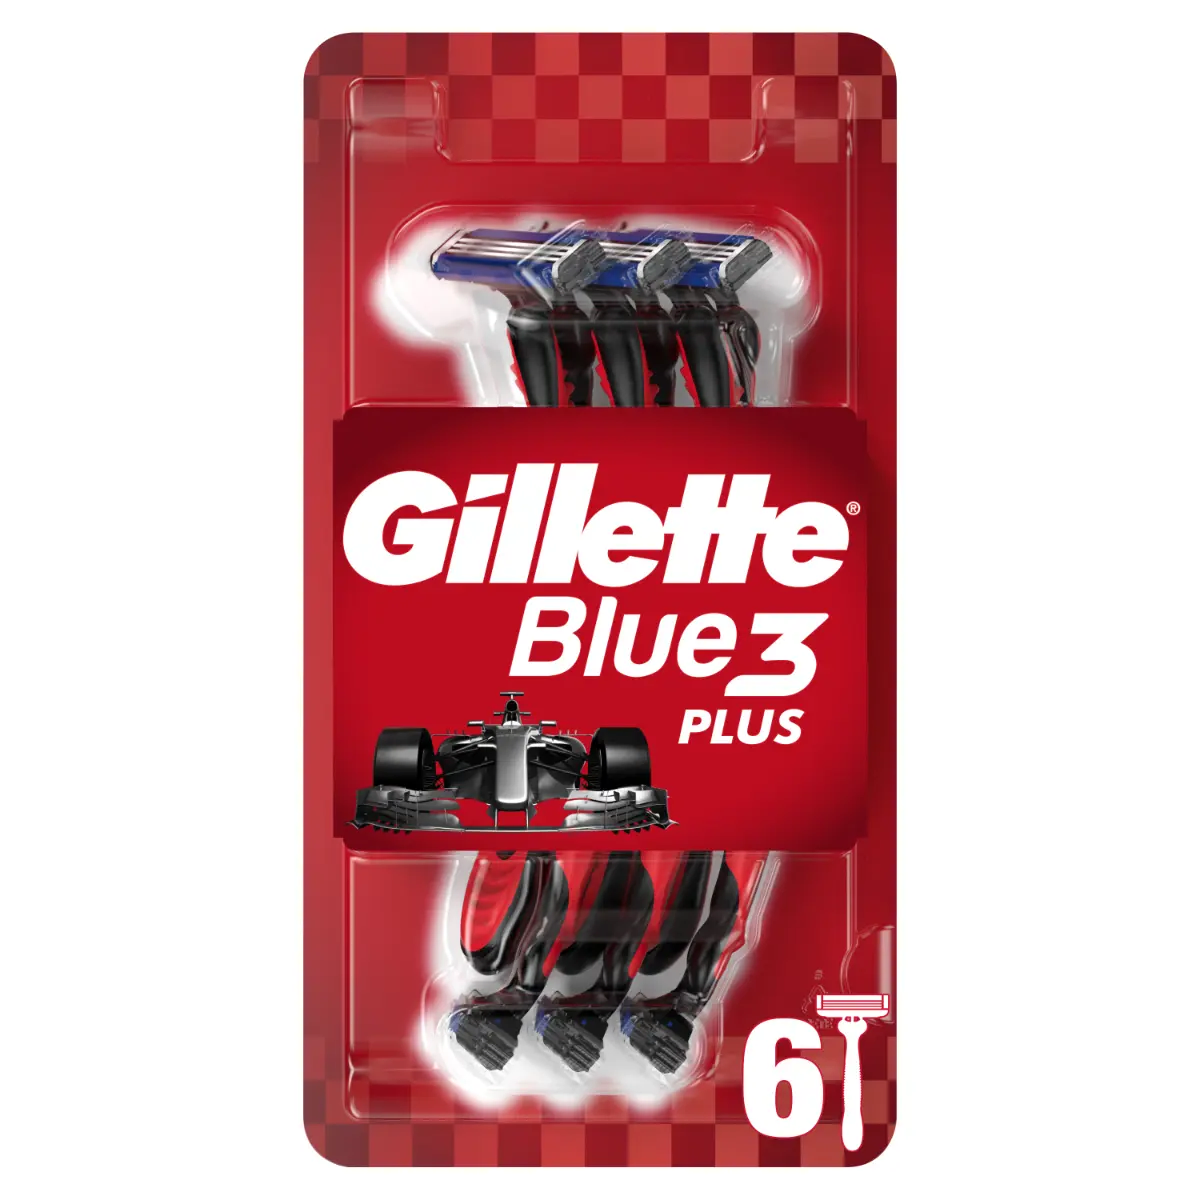 Aparat de ras de unica folosinta Gillette Blue3 Plus, 6 buc